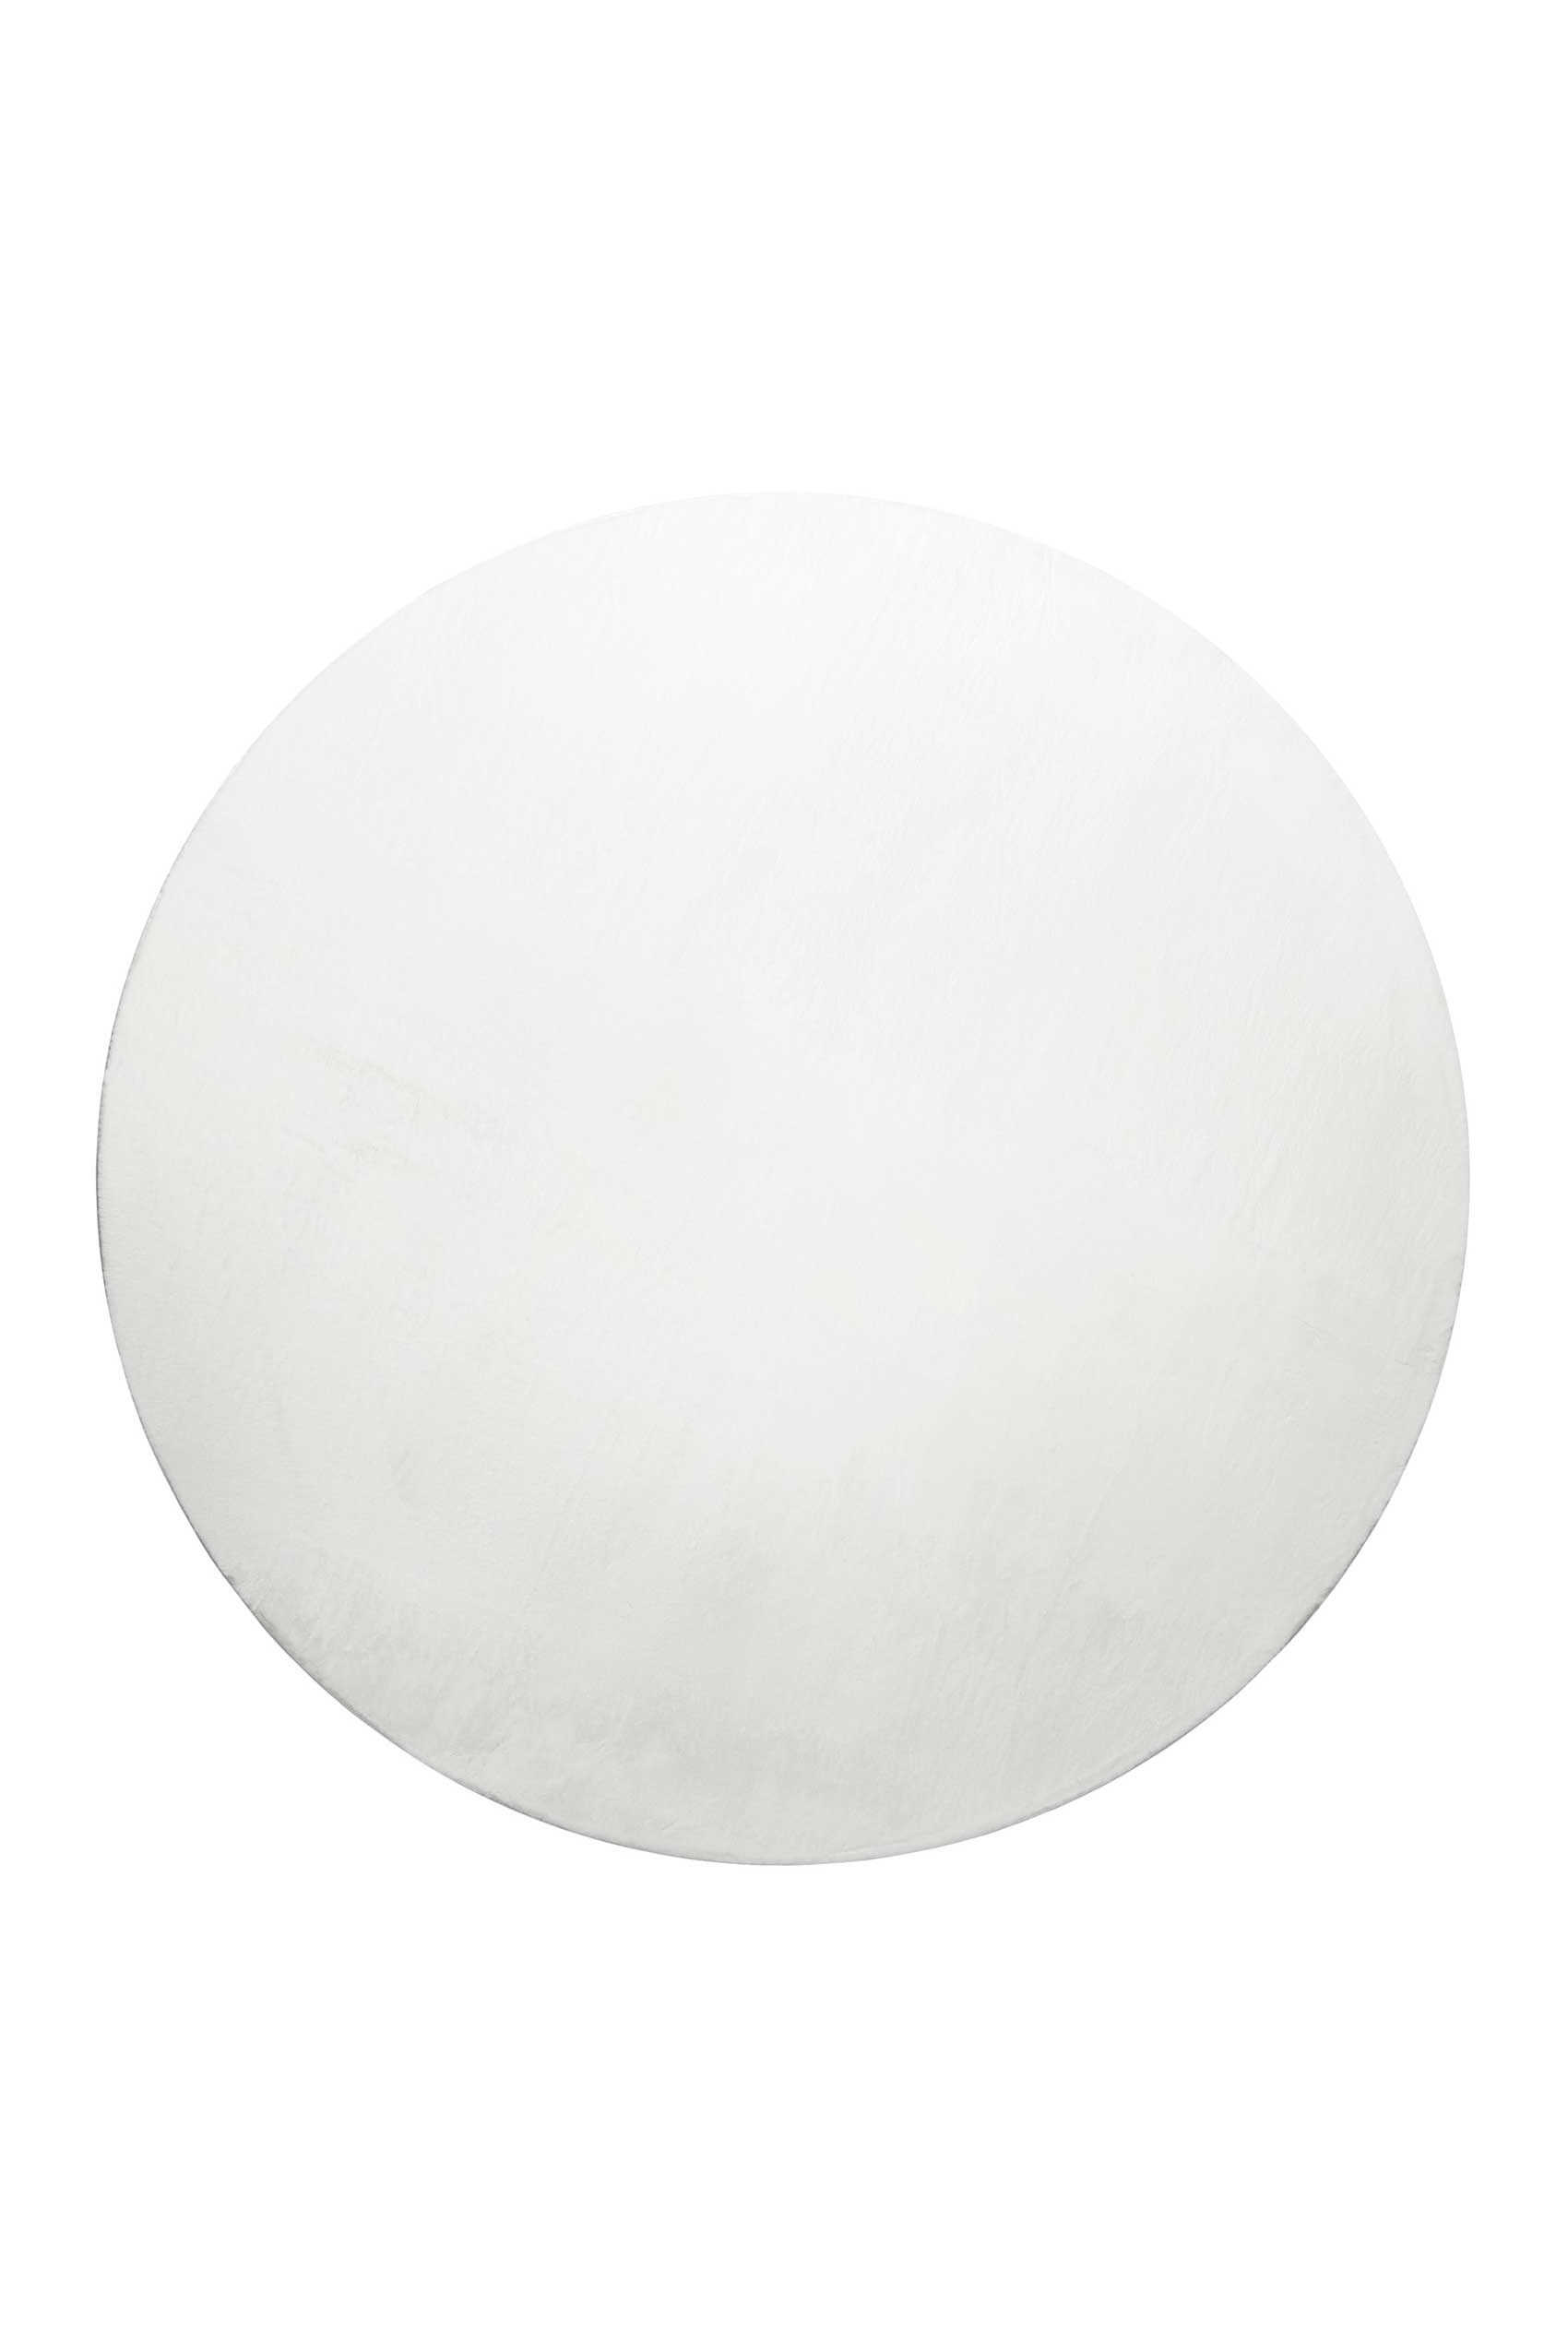 Tapis rond tufté mèches rases (15 mm) blanc 120 D